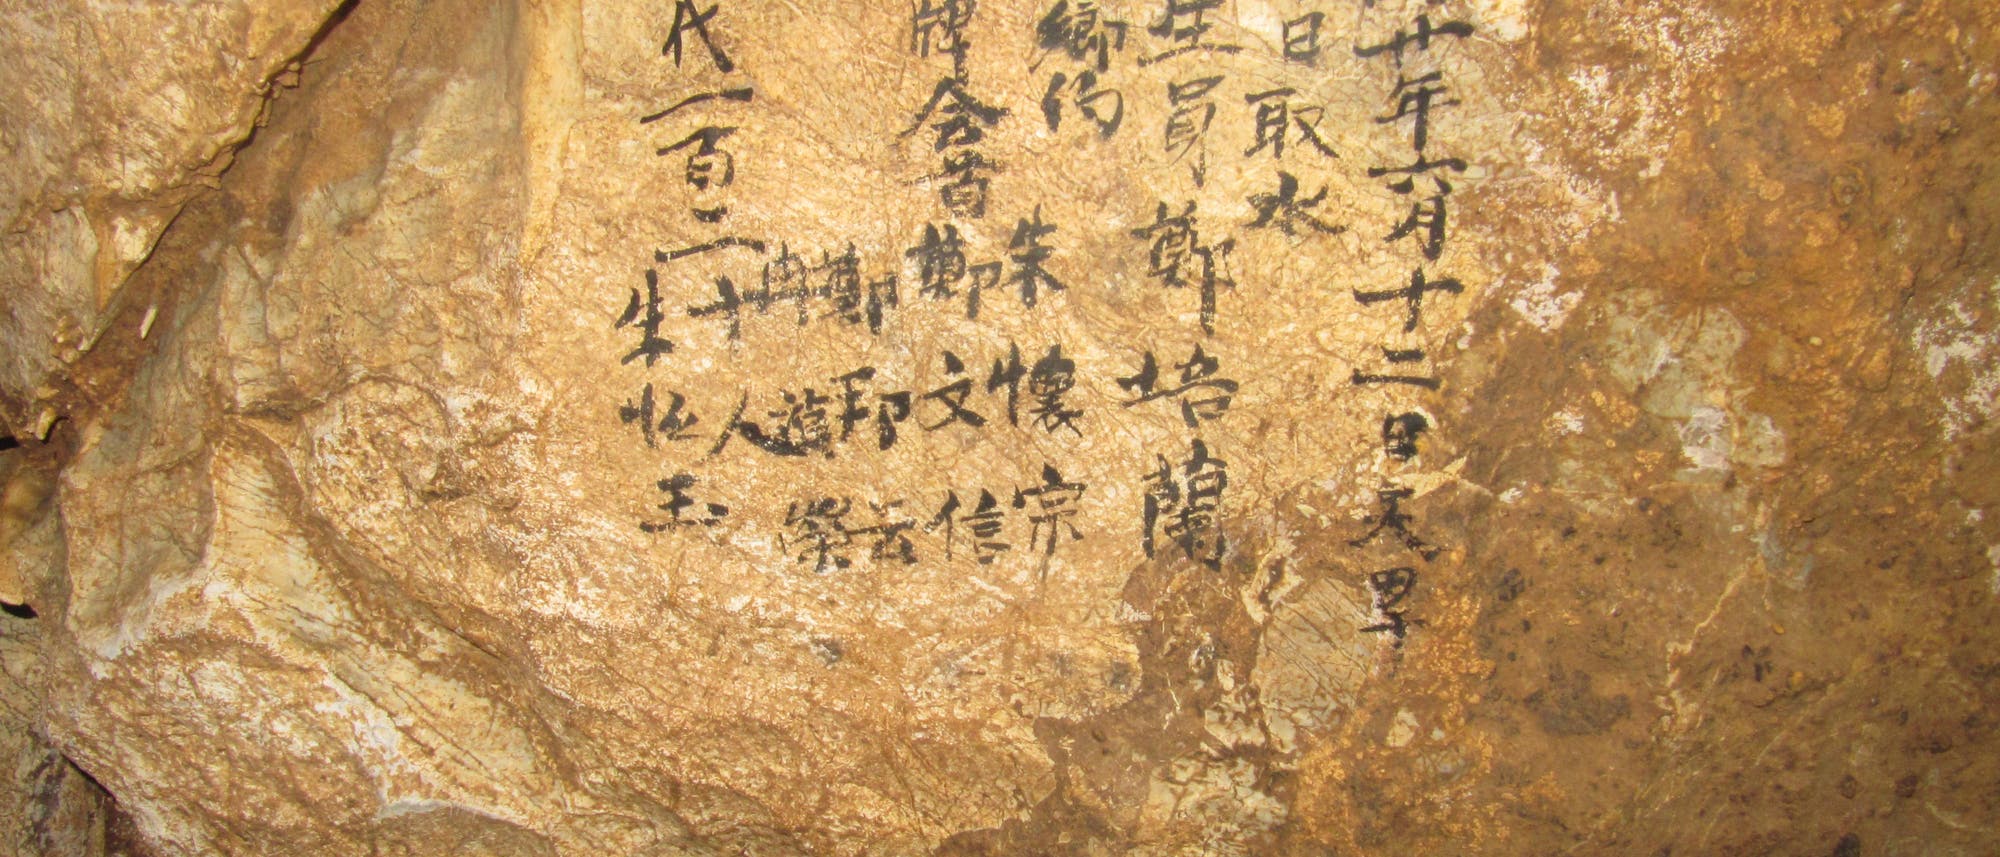 Historische Schrift in einer Chinesischen Höhle beschreibt eine Dürre